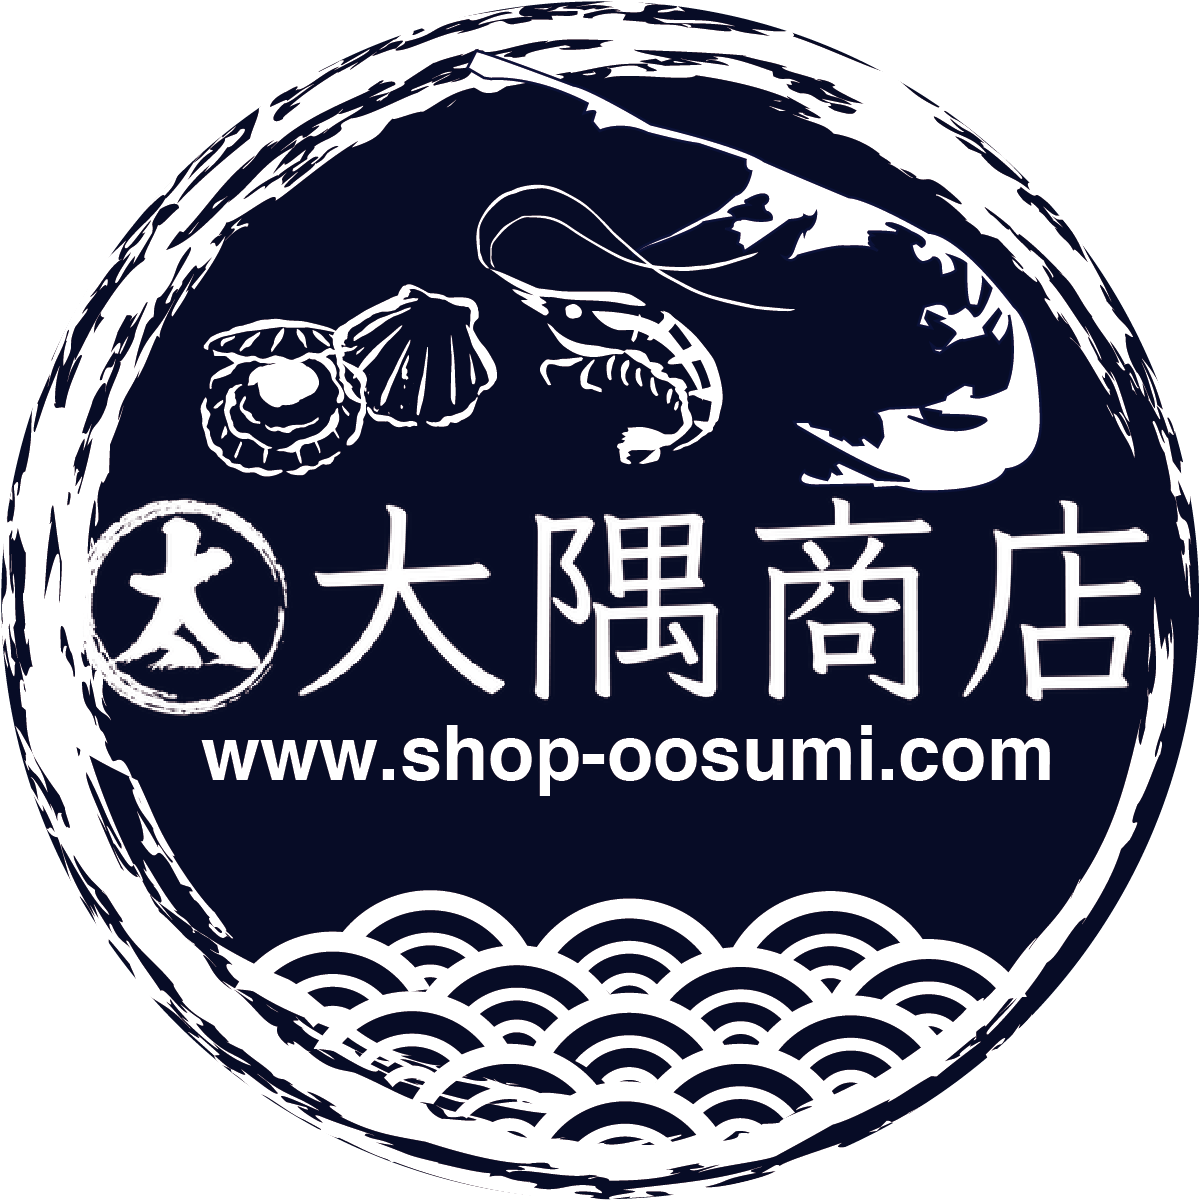 大隅商店ネットショップ部・野付半島前浜で獲れる鮮魚をお届けします。